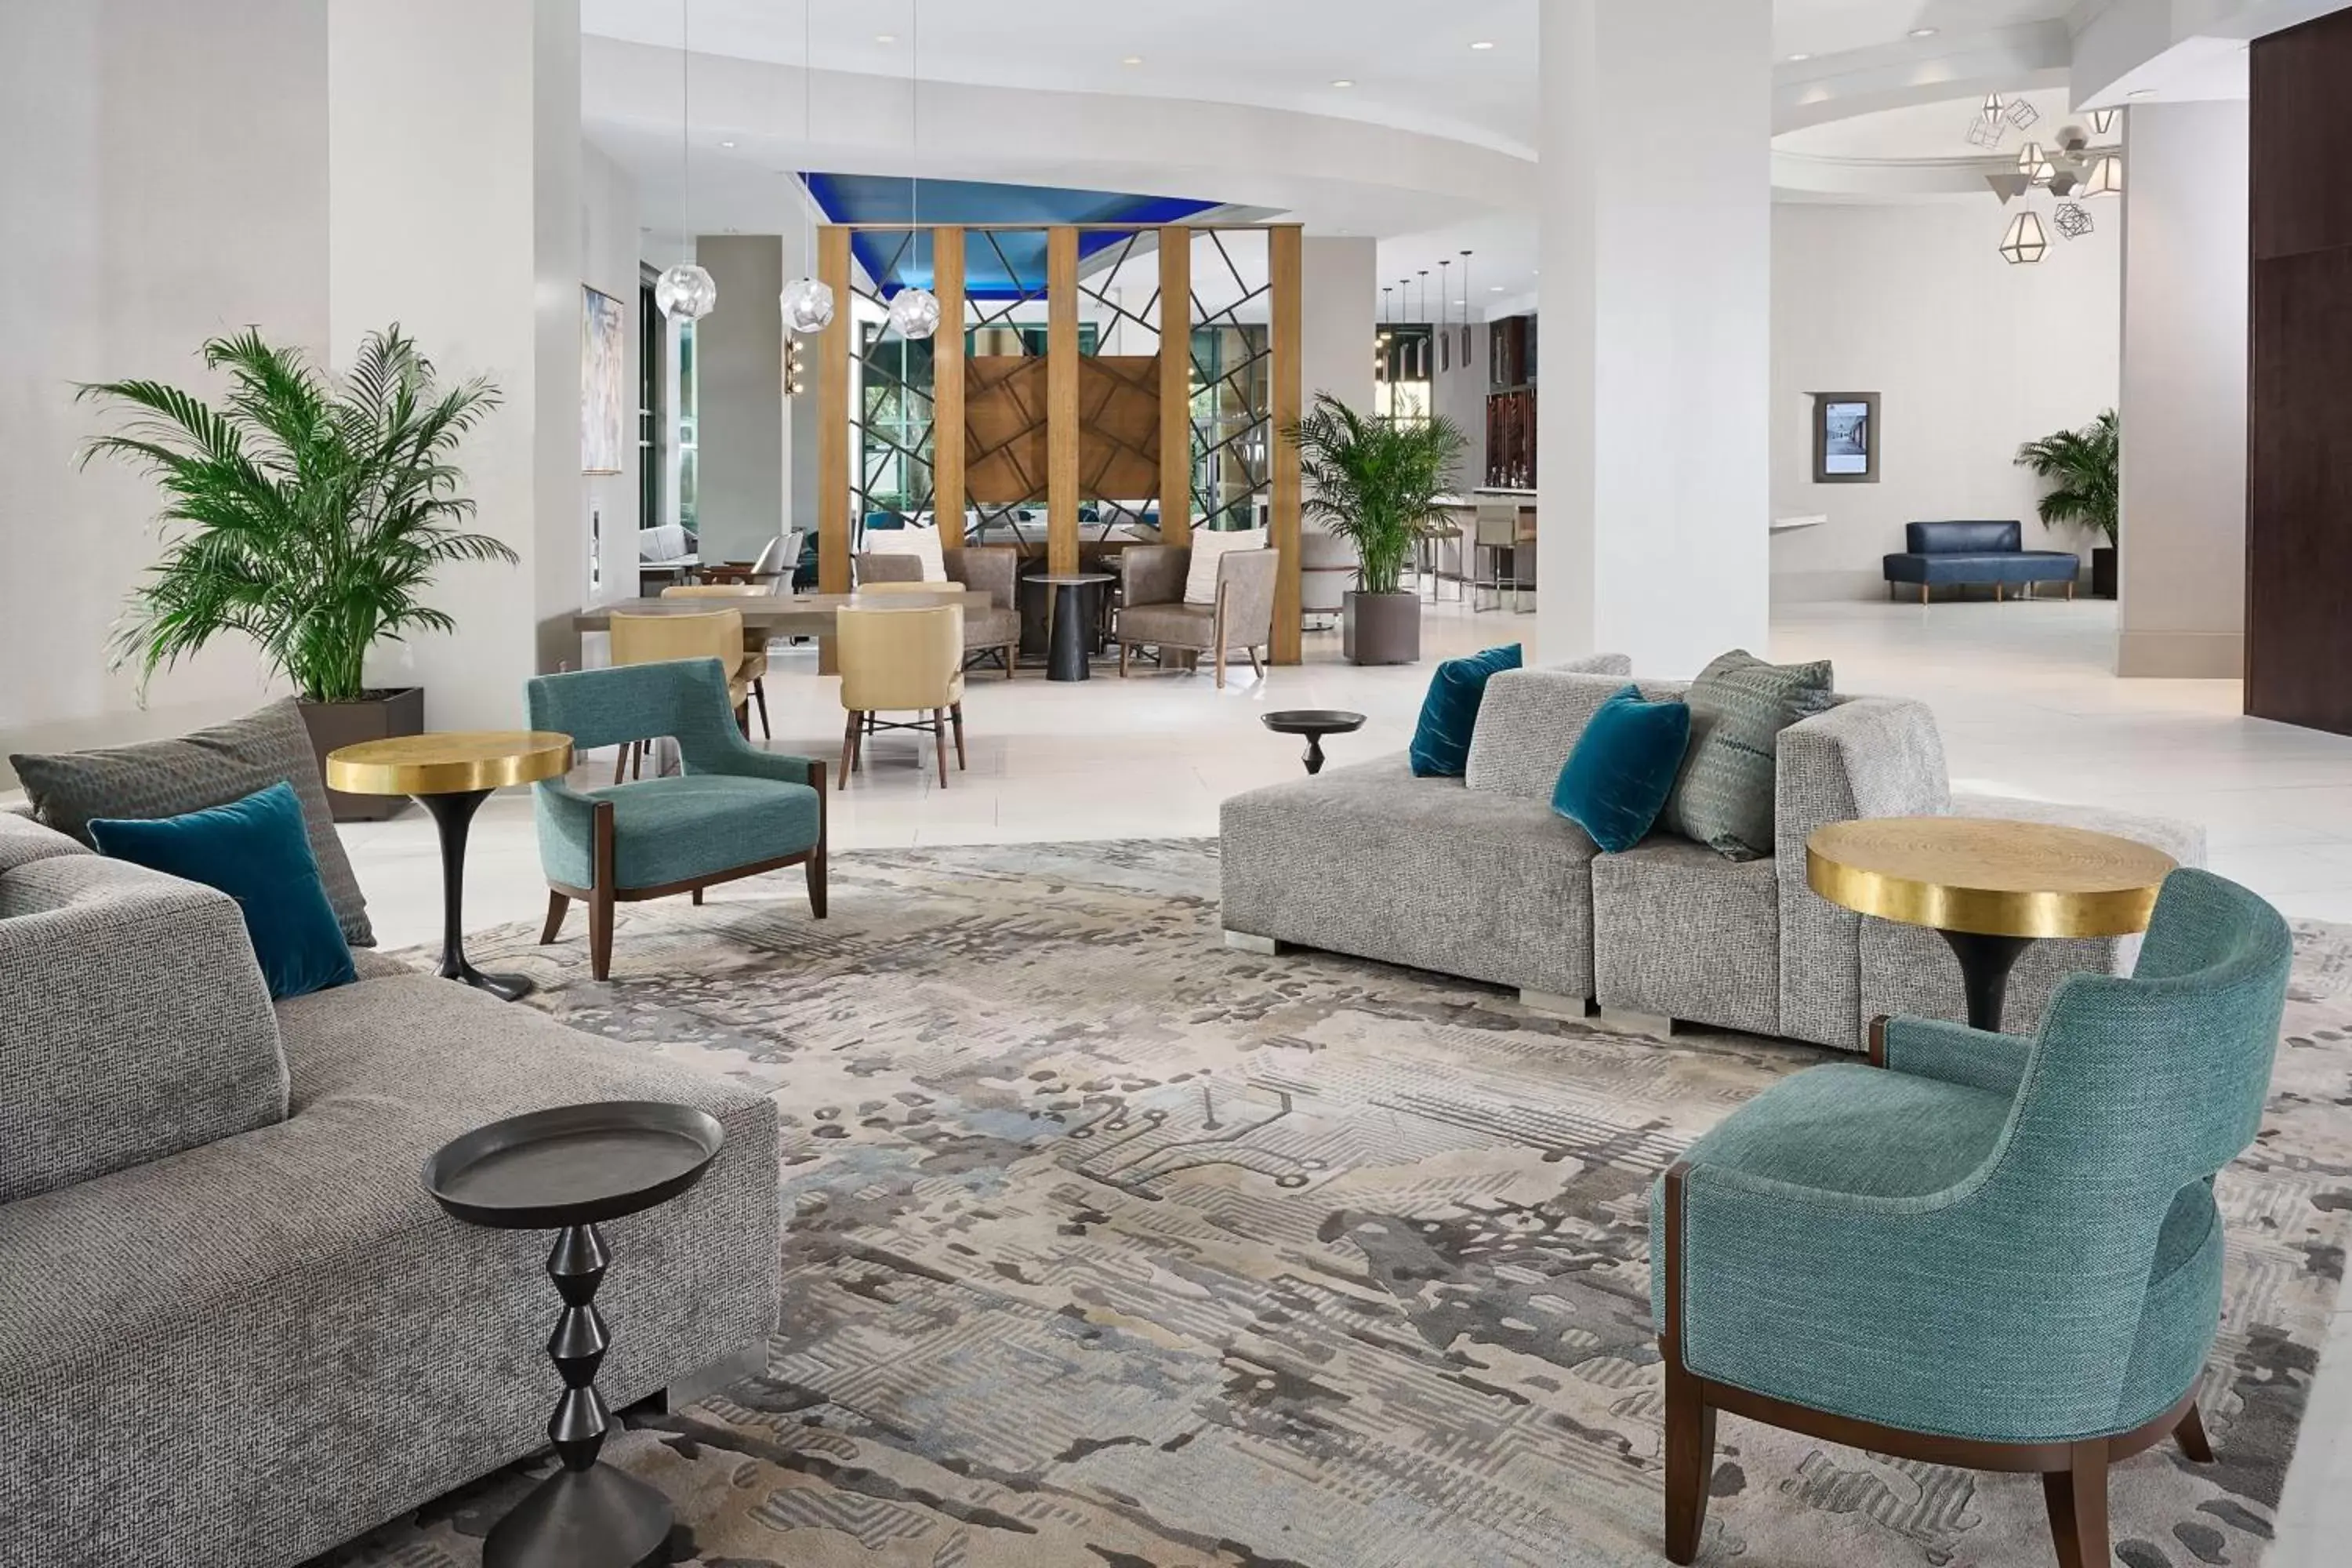 Lobby or reception in Orlando Marriott Lake Mary